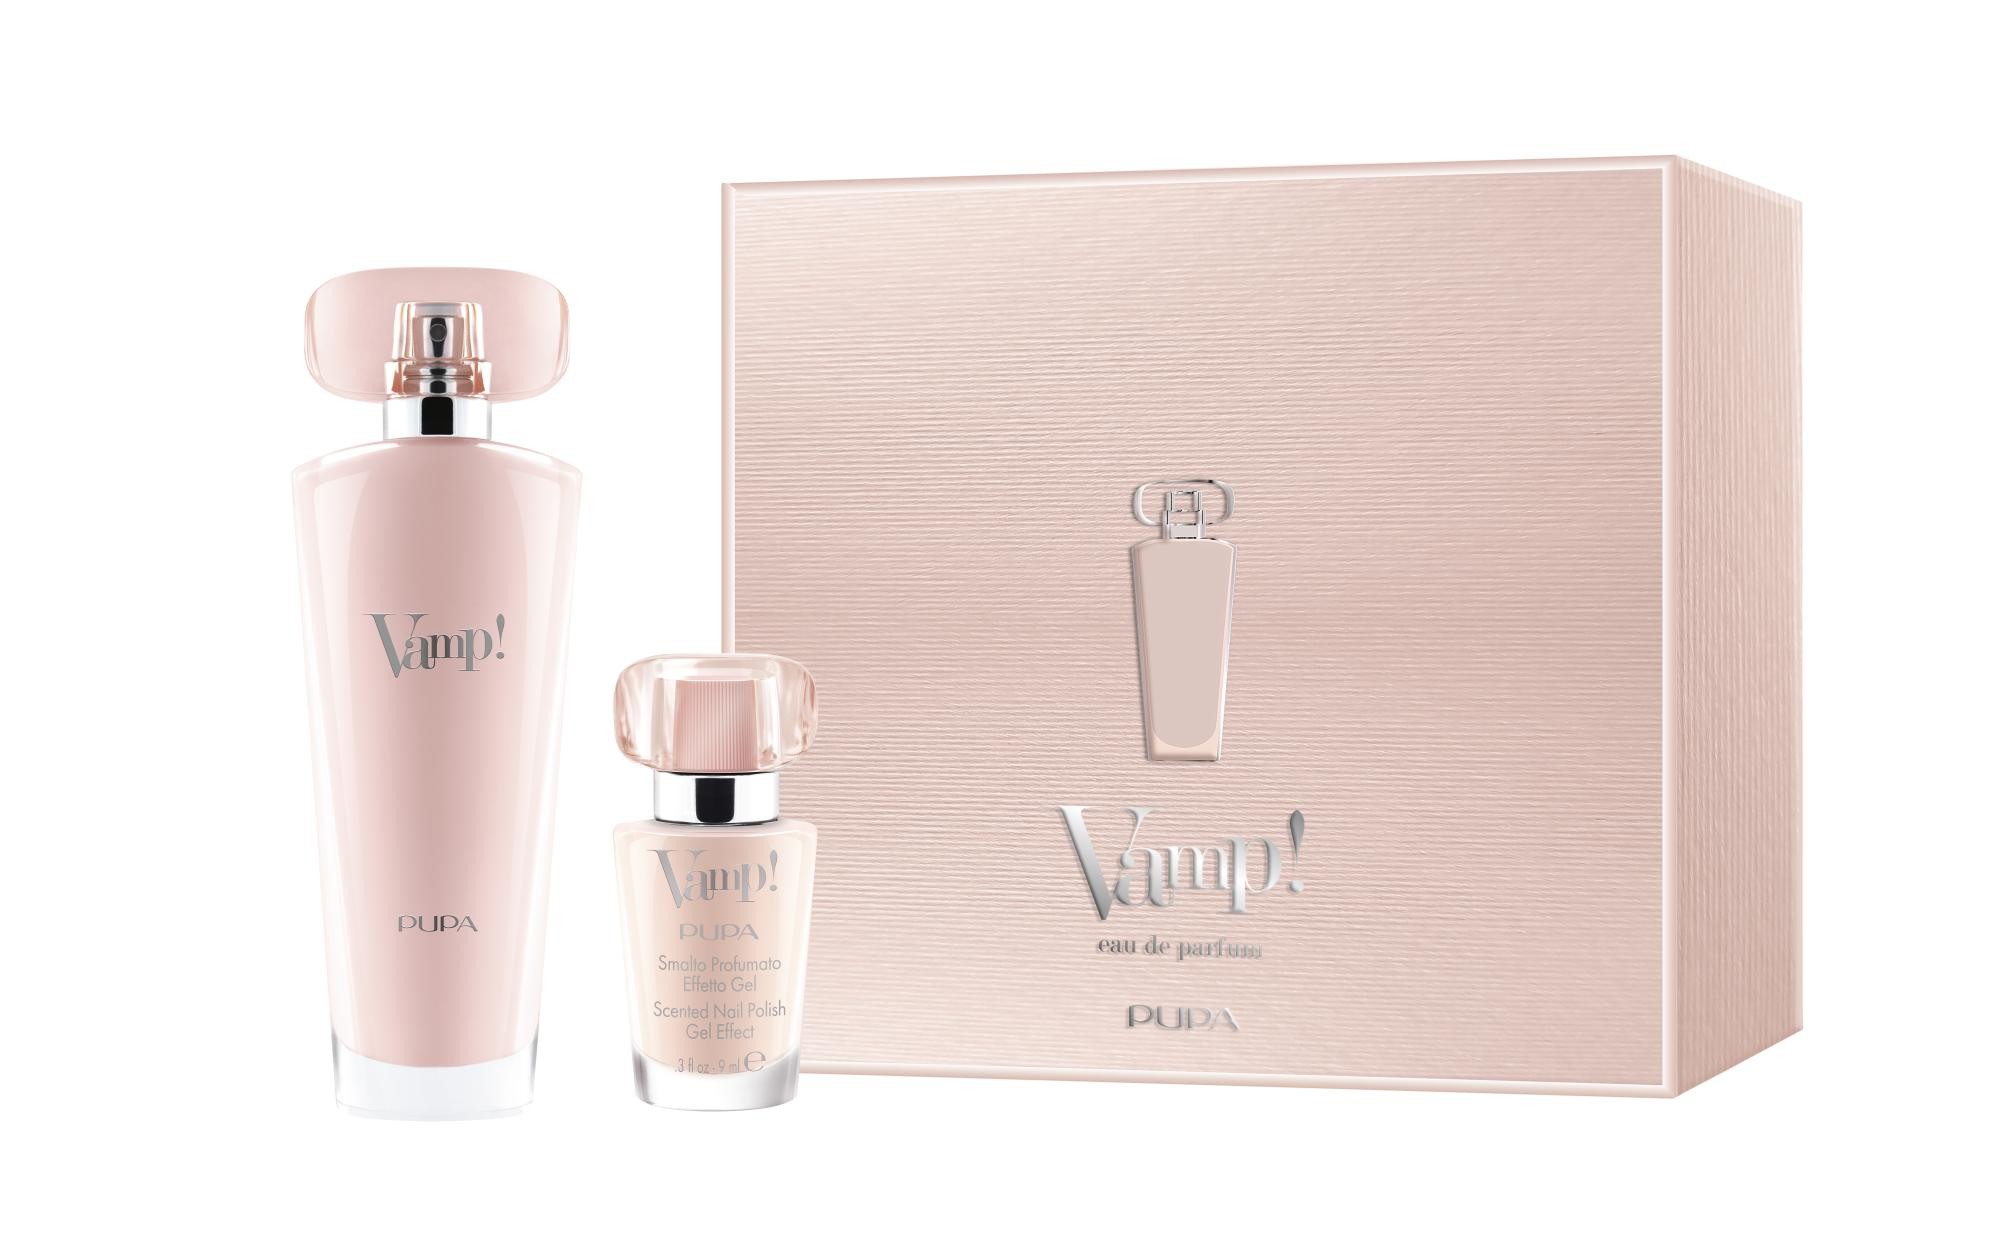 PUPA Milano Kit Vamp! Pink Eau De Parfum 50 ml + Vamp! Smalto Profumato Effetto Gel